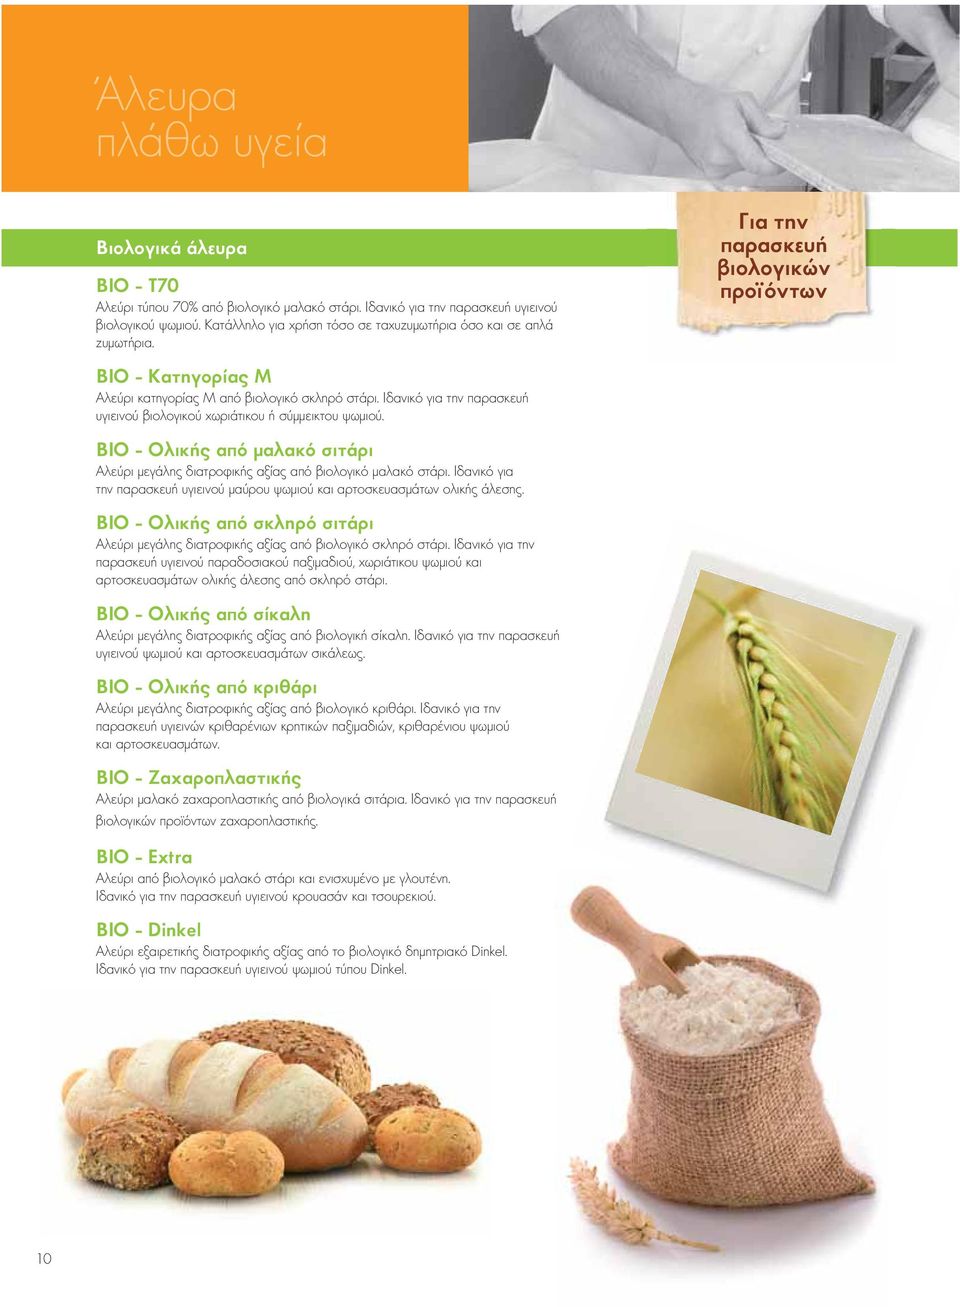 Ιδανικό για την παρασκευή υγιεινού βιολογικού χωριάτικου ή σύμμεικτου ψωμιού. ΒΙΟ - Ολικής από μαλακό σιτάρι Αλεύρι μεγάλης διατροφικής αξίας από βιολογικό μαλακό στάρι.